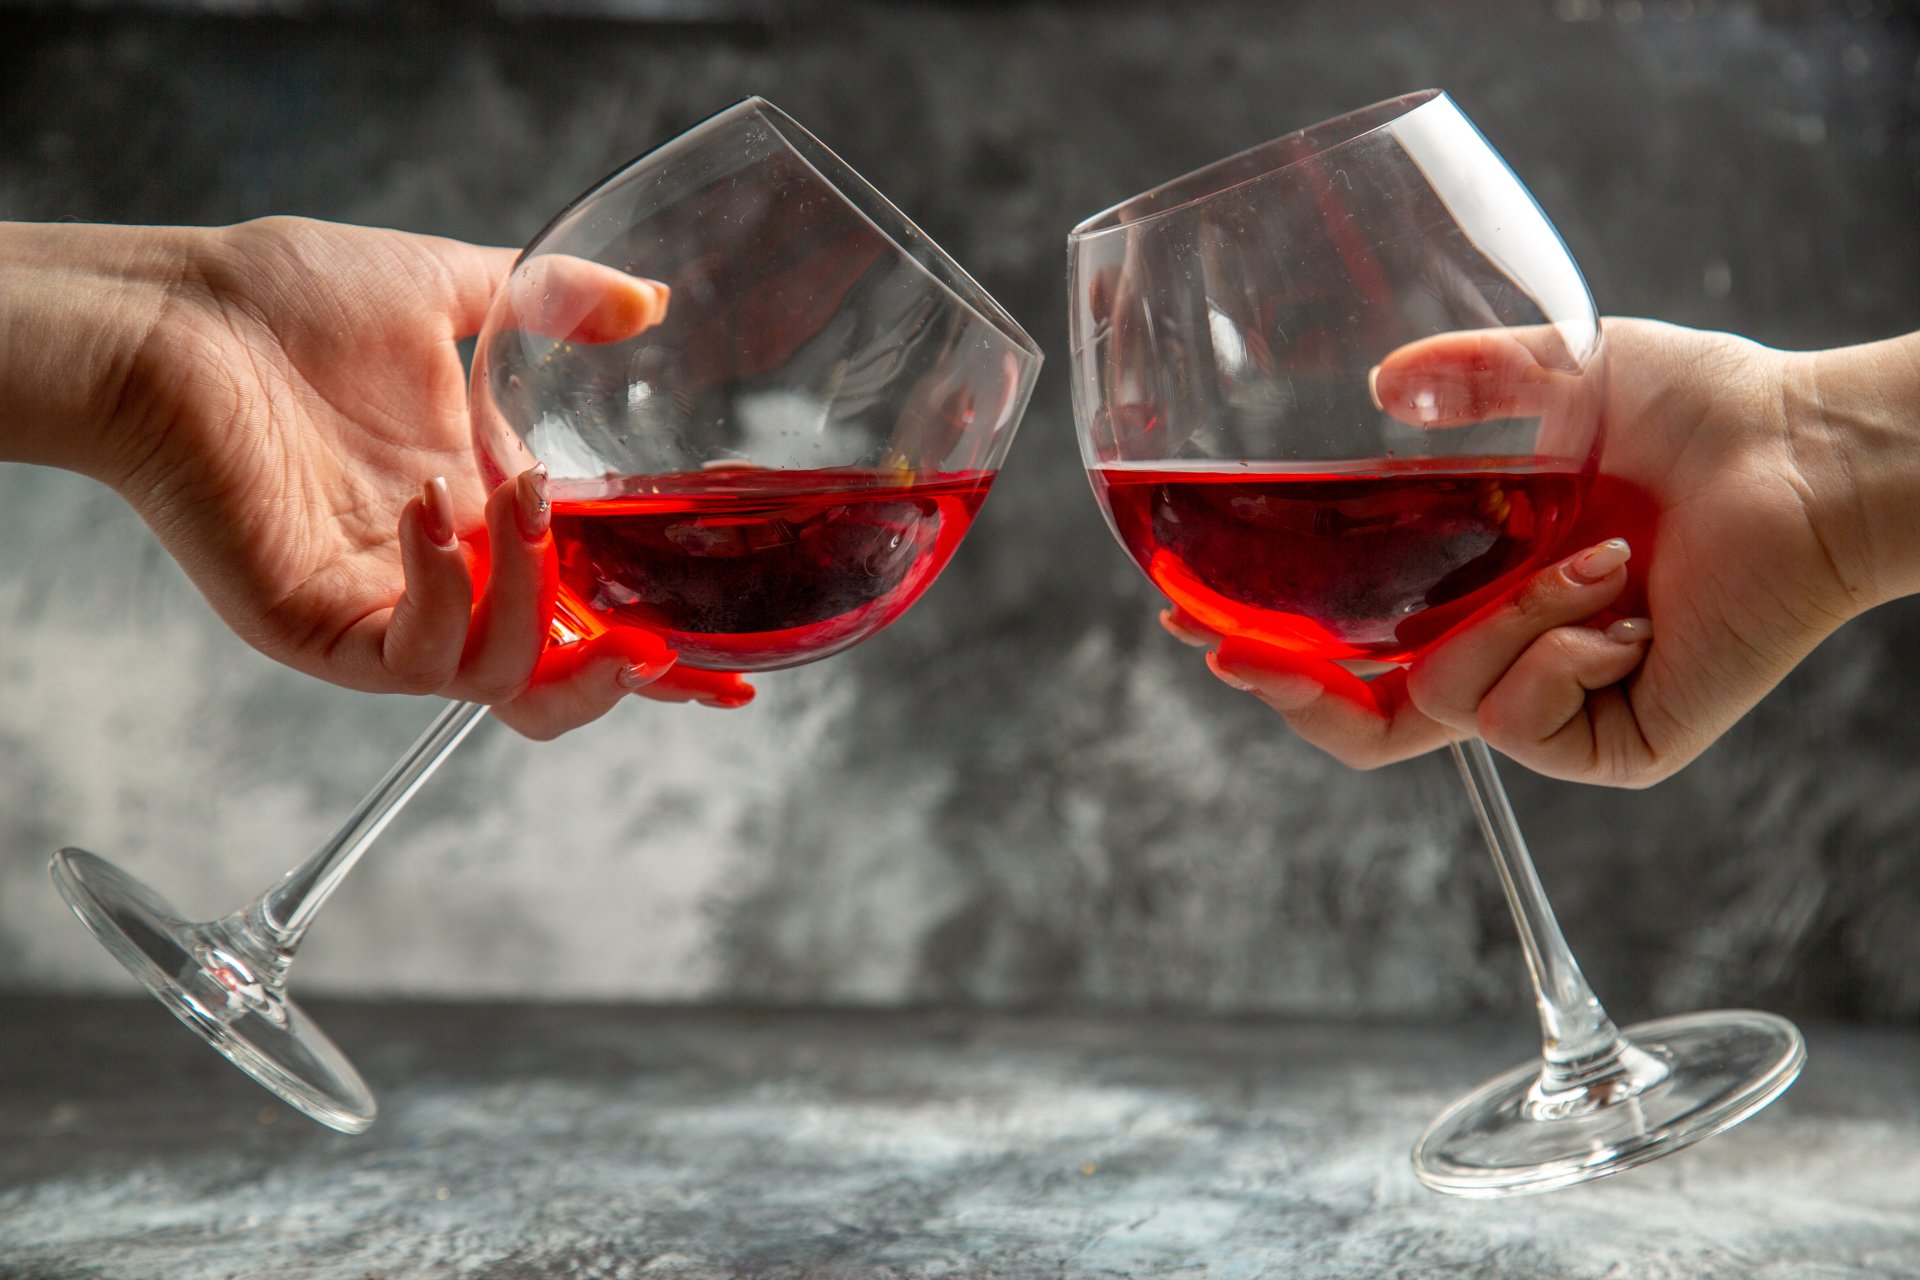 เอาใจสายดื่ม ‘ไวน์แดง’ มีประโยชน์ต่อสุขภาพ (ถ้าดื่มแต่พอดี)